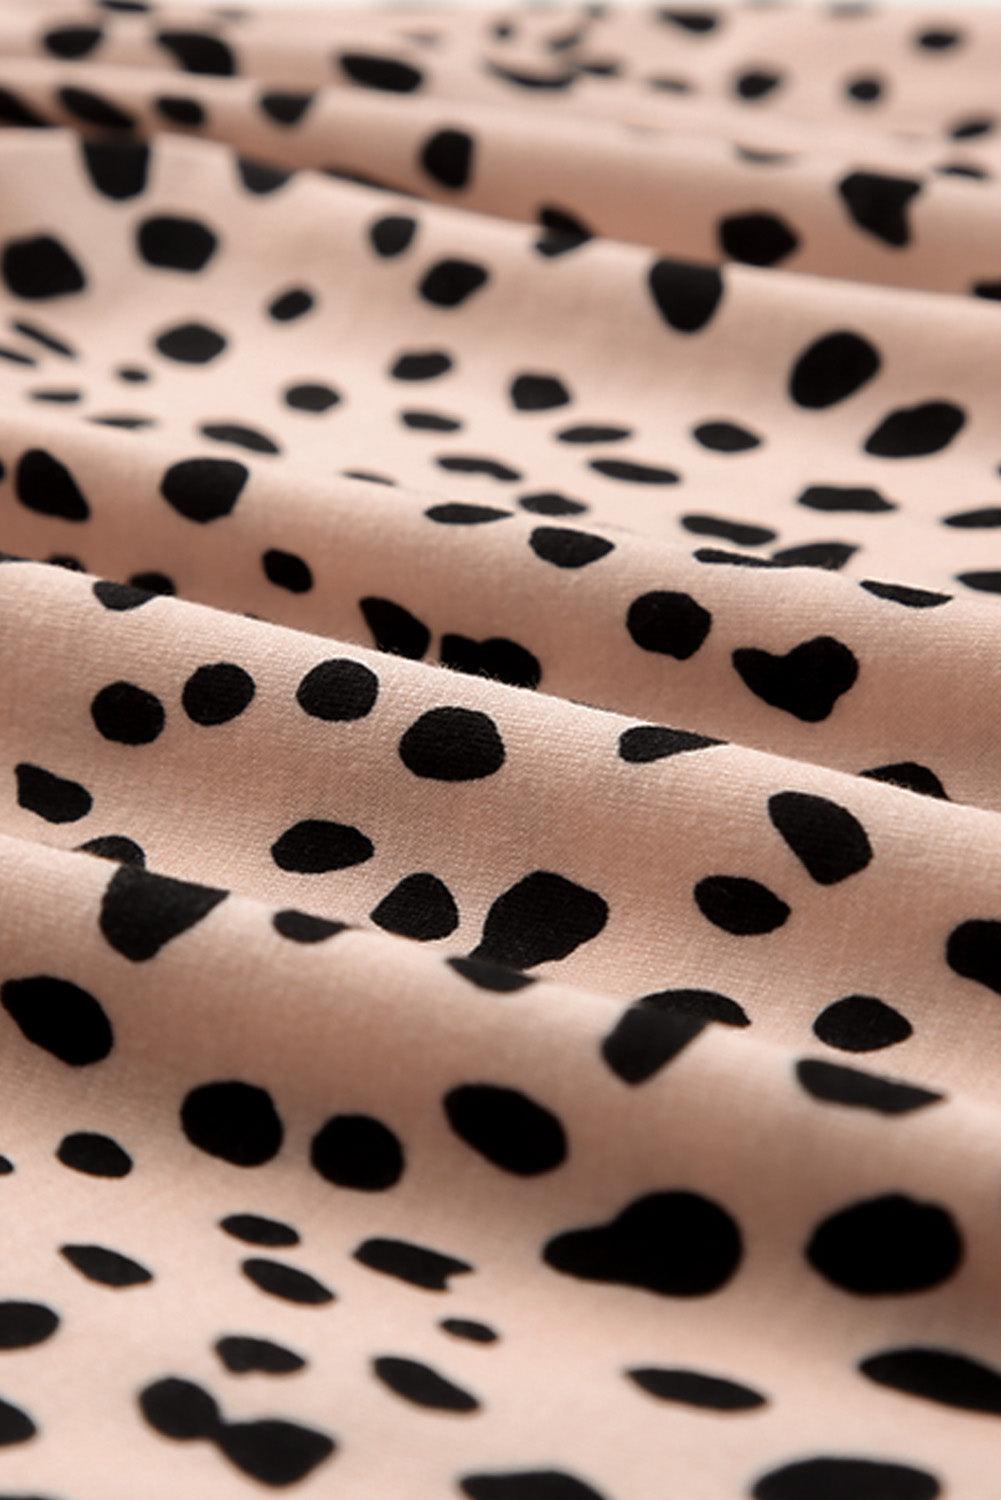 Short Sleeve Leopard Printed Summer Tunic T-shirt Dress